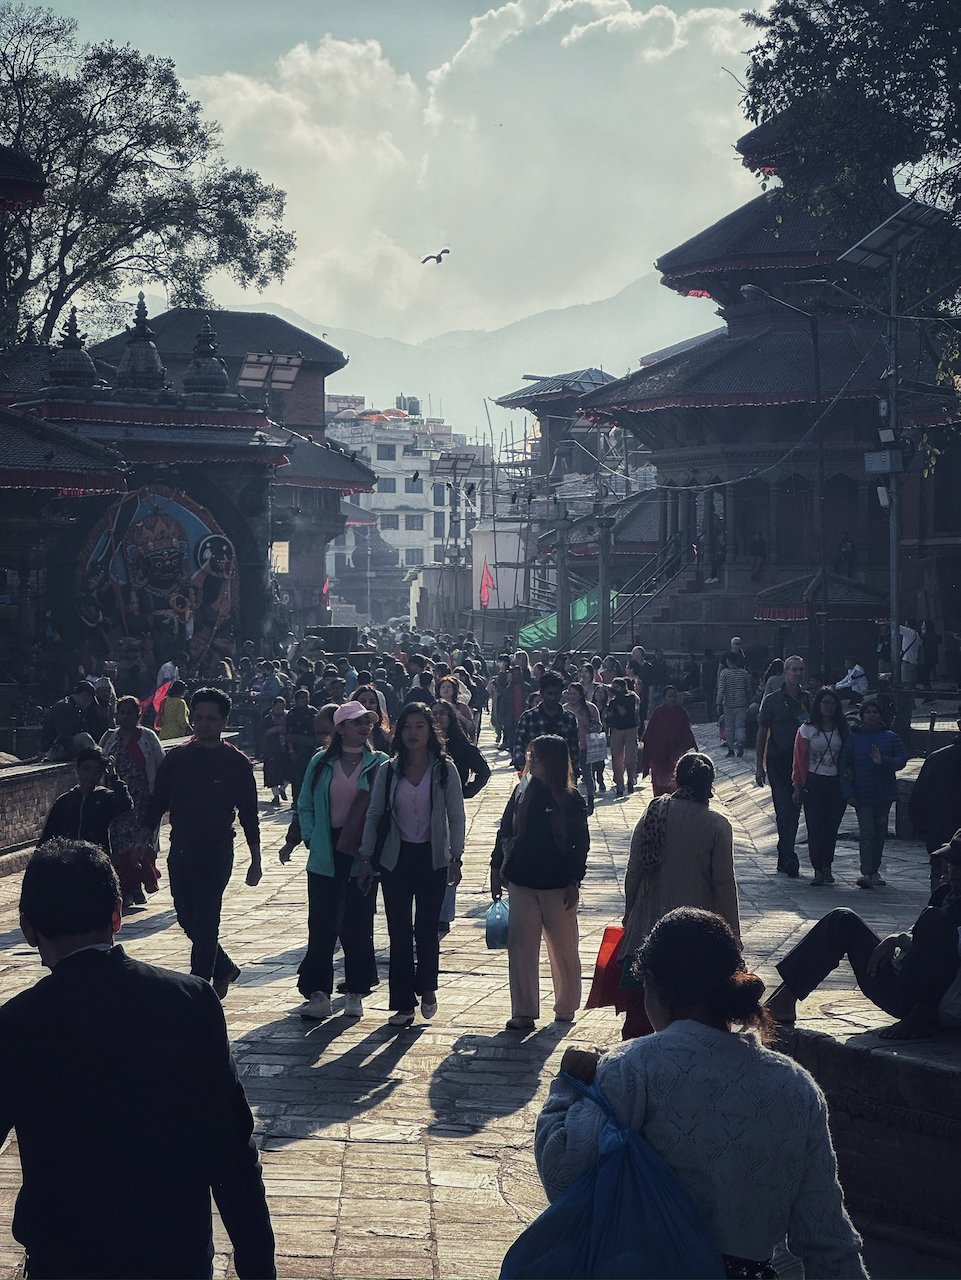 Durubar Square Kathmandu.jpeg